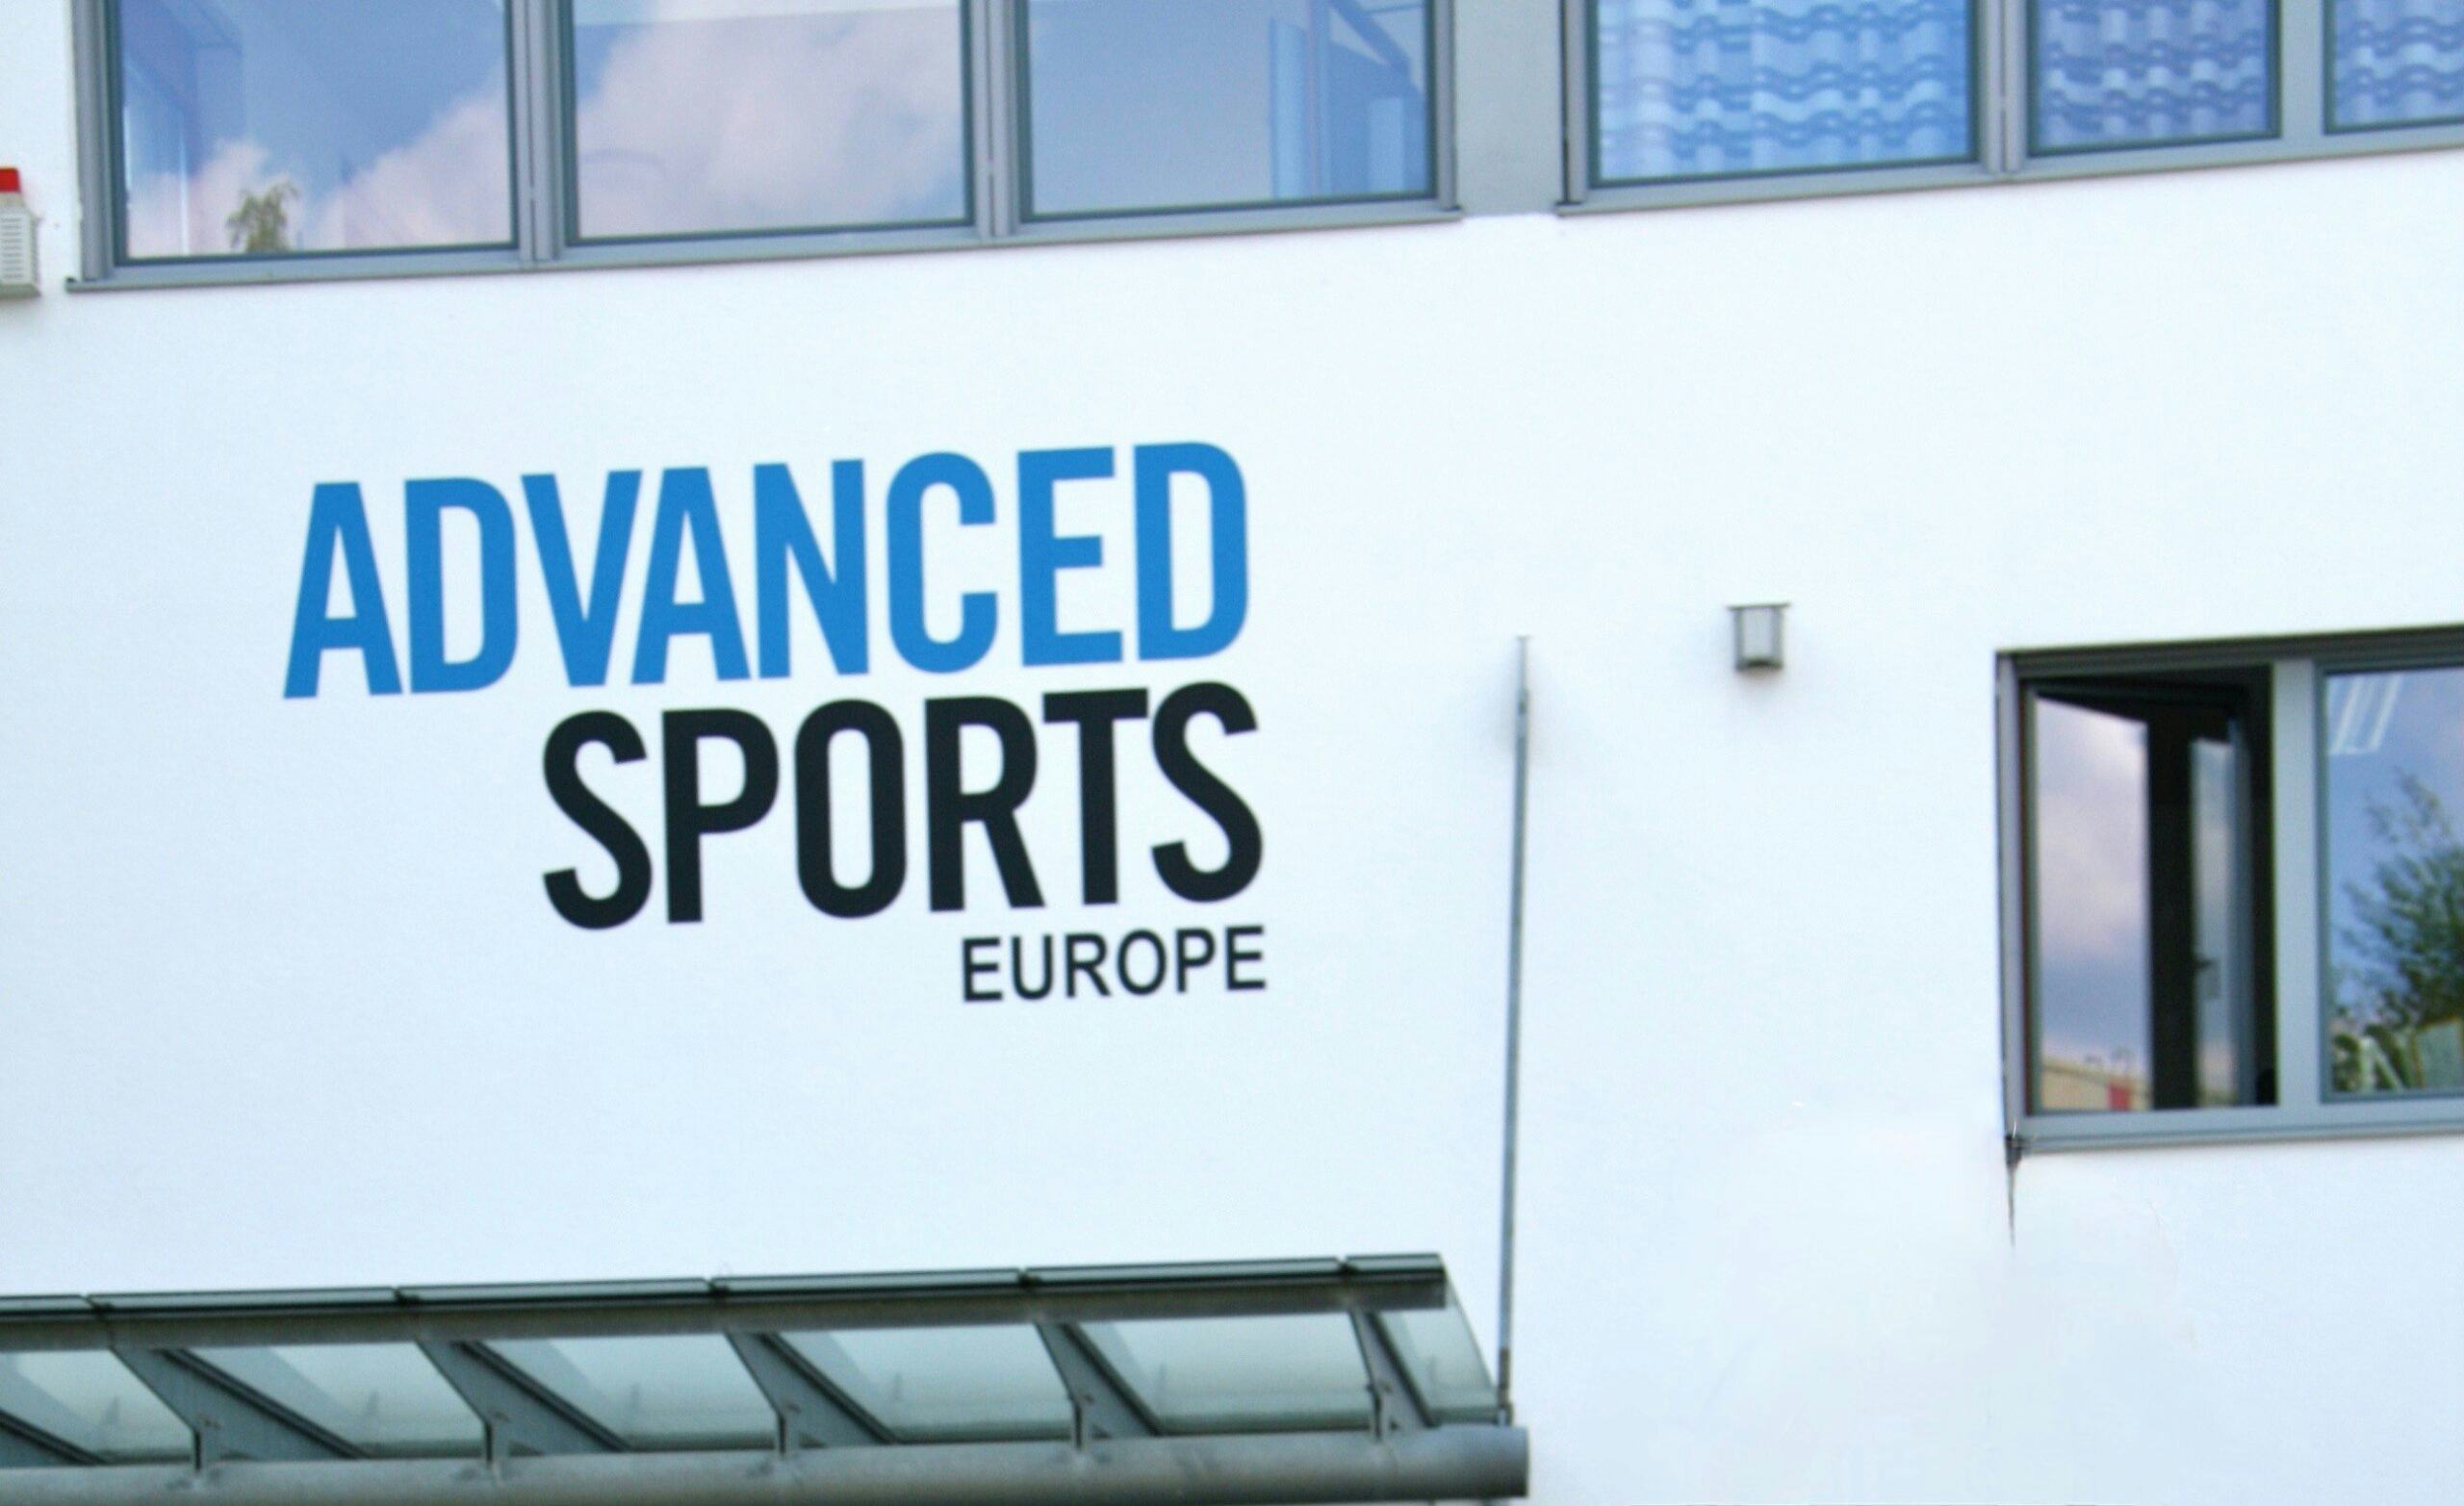 Advanced Sports GmbH 申請破產重整程序